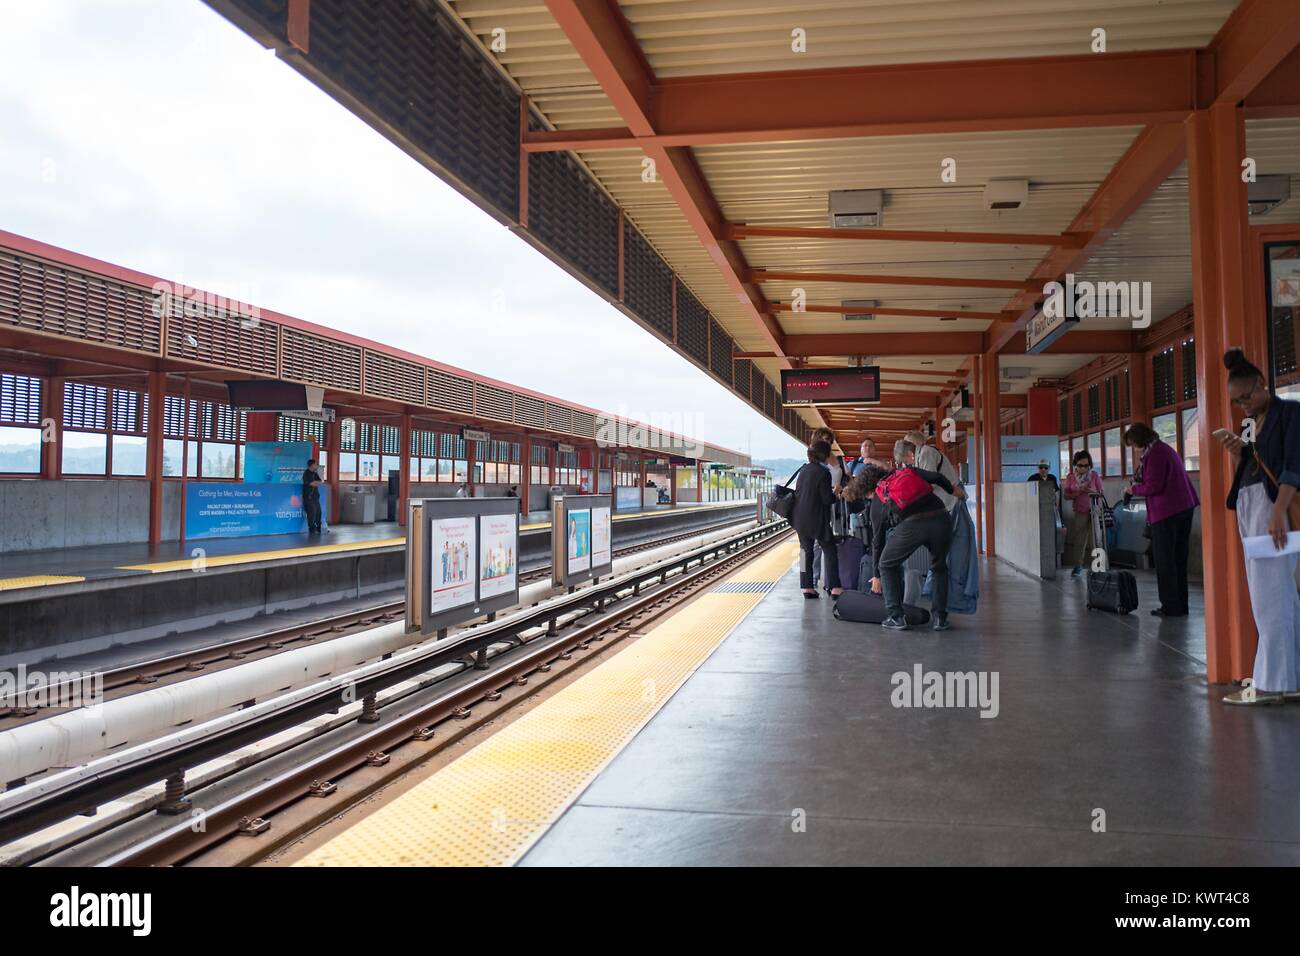 I piloti di linea e attendere per un treno per San Francisco all'Walnut Creek, California stazione della Bay Area Rapid Transit (BART) Sistema ferroviario leggero, 13 settembre 2017. Foto Stock